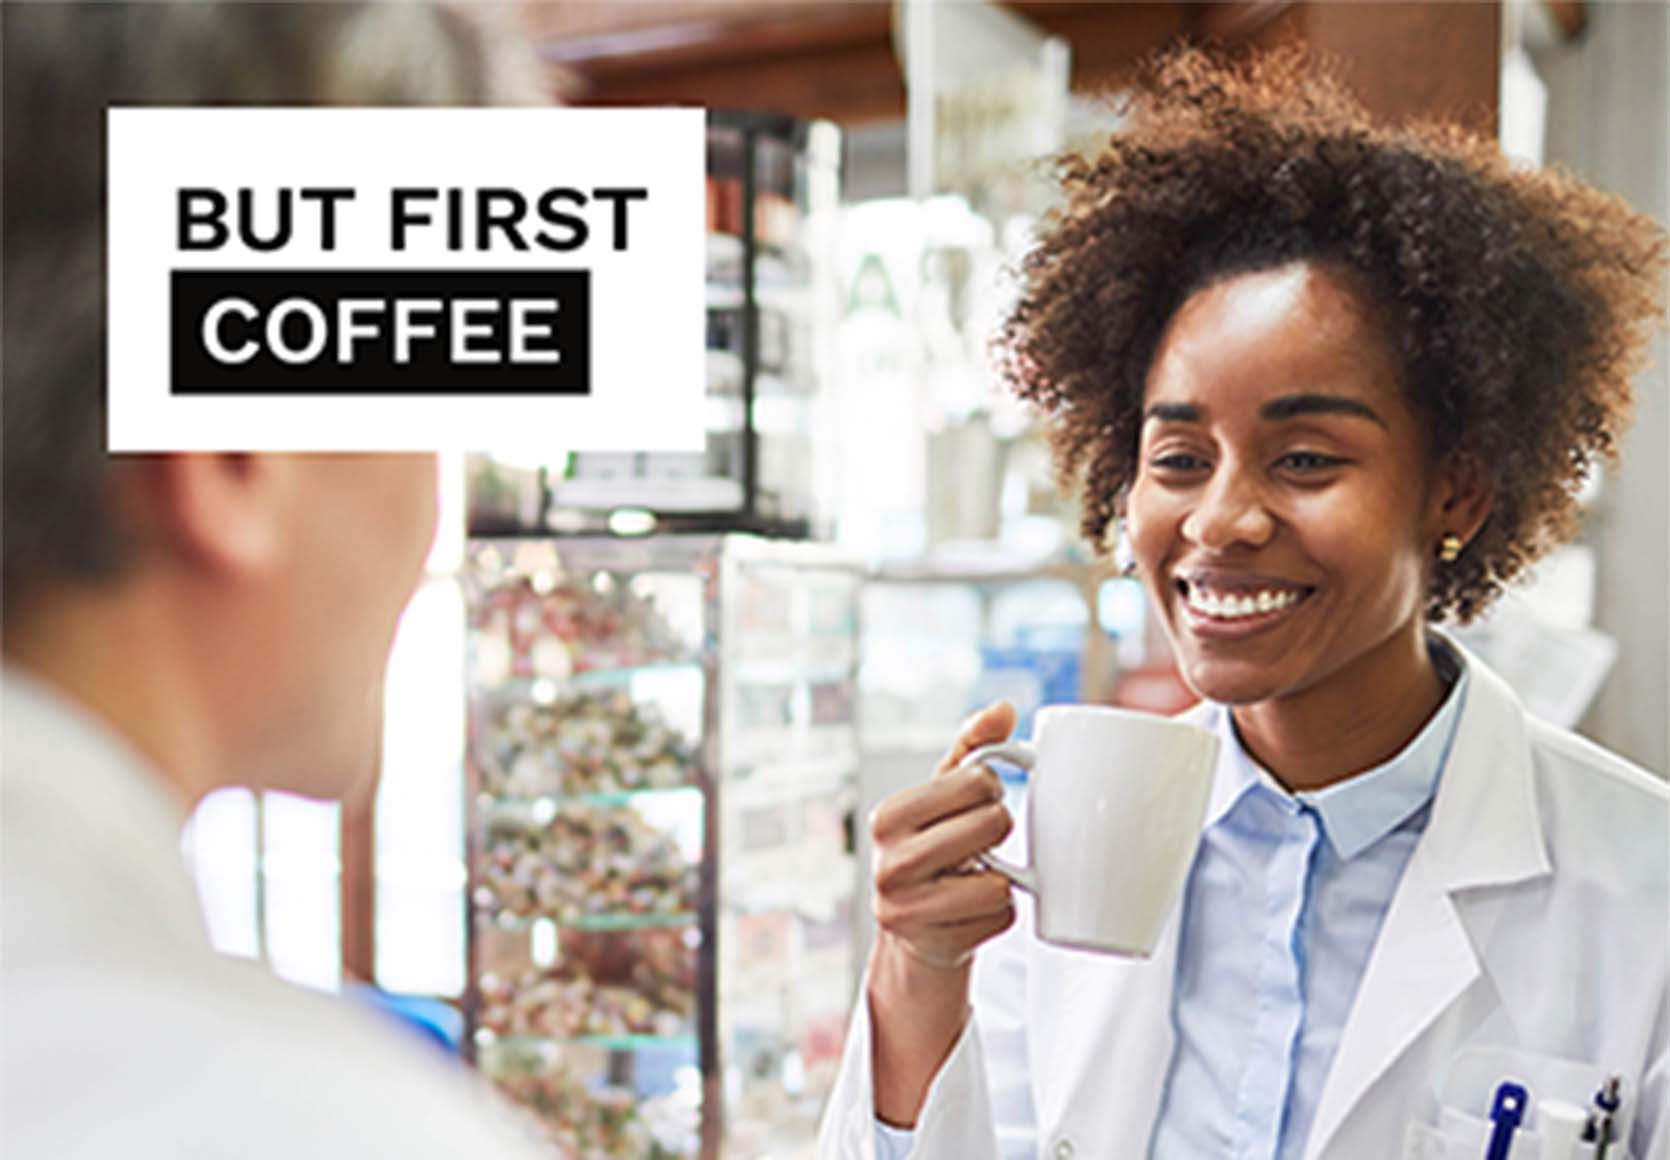 Der Apotheker genießt dank des Apothekenroboters eine Tasse Kaffee